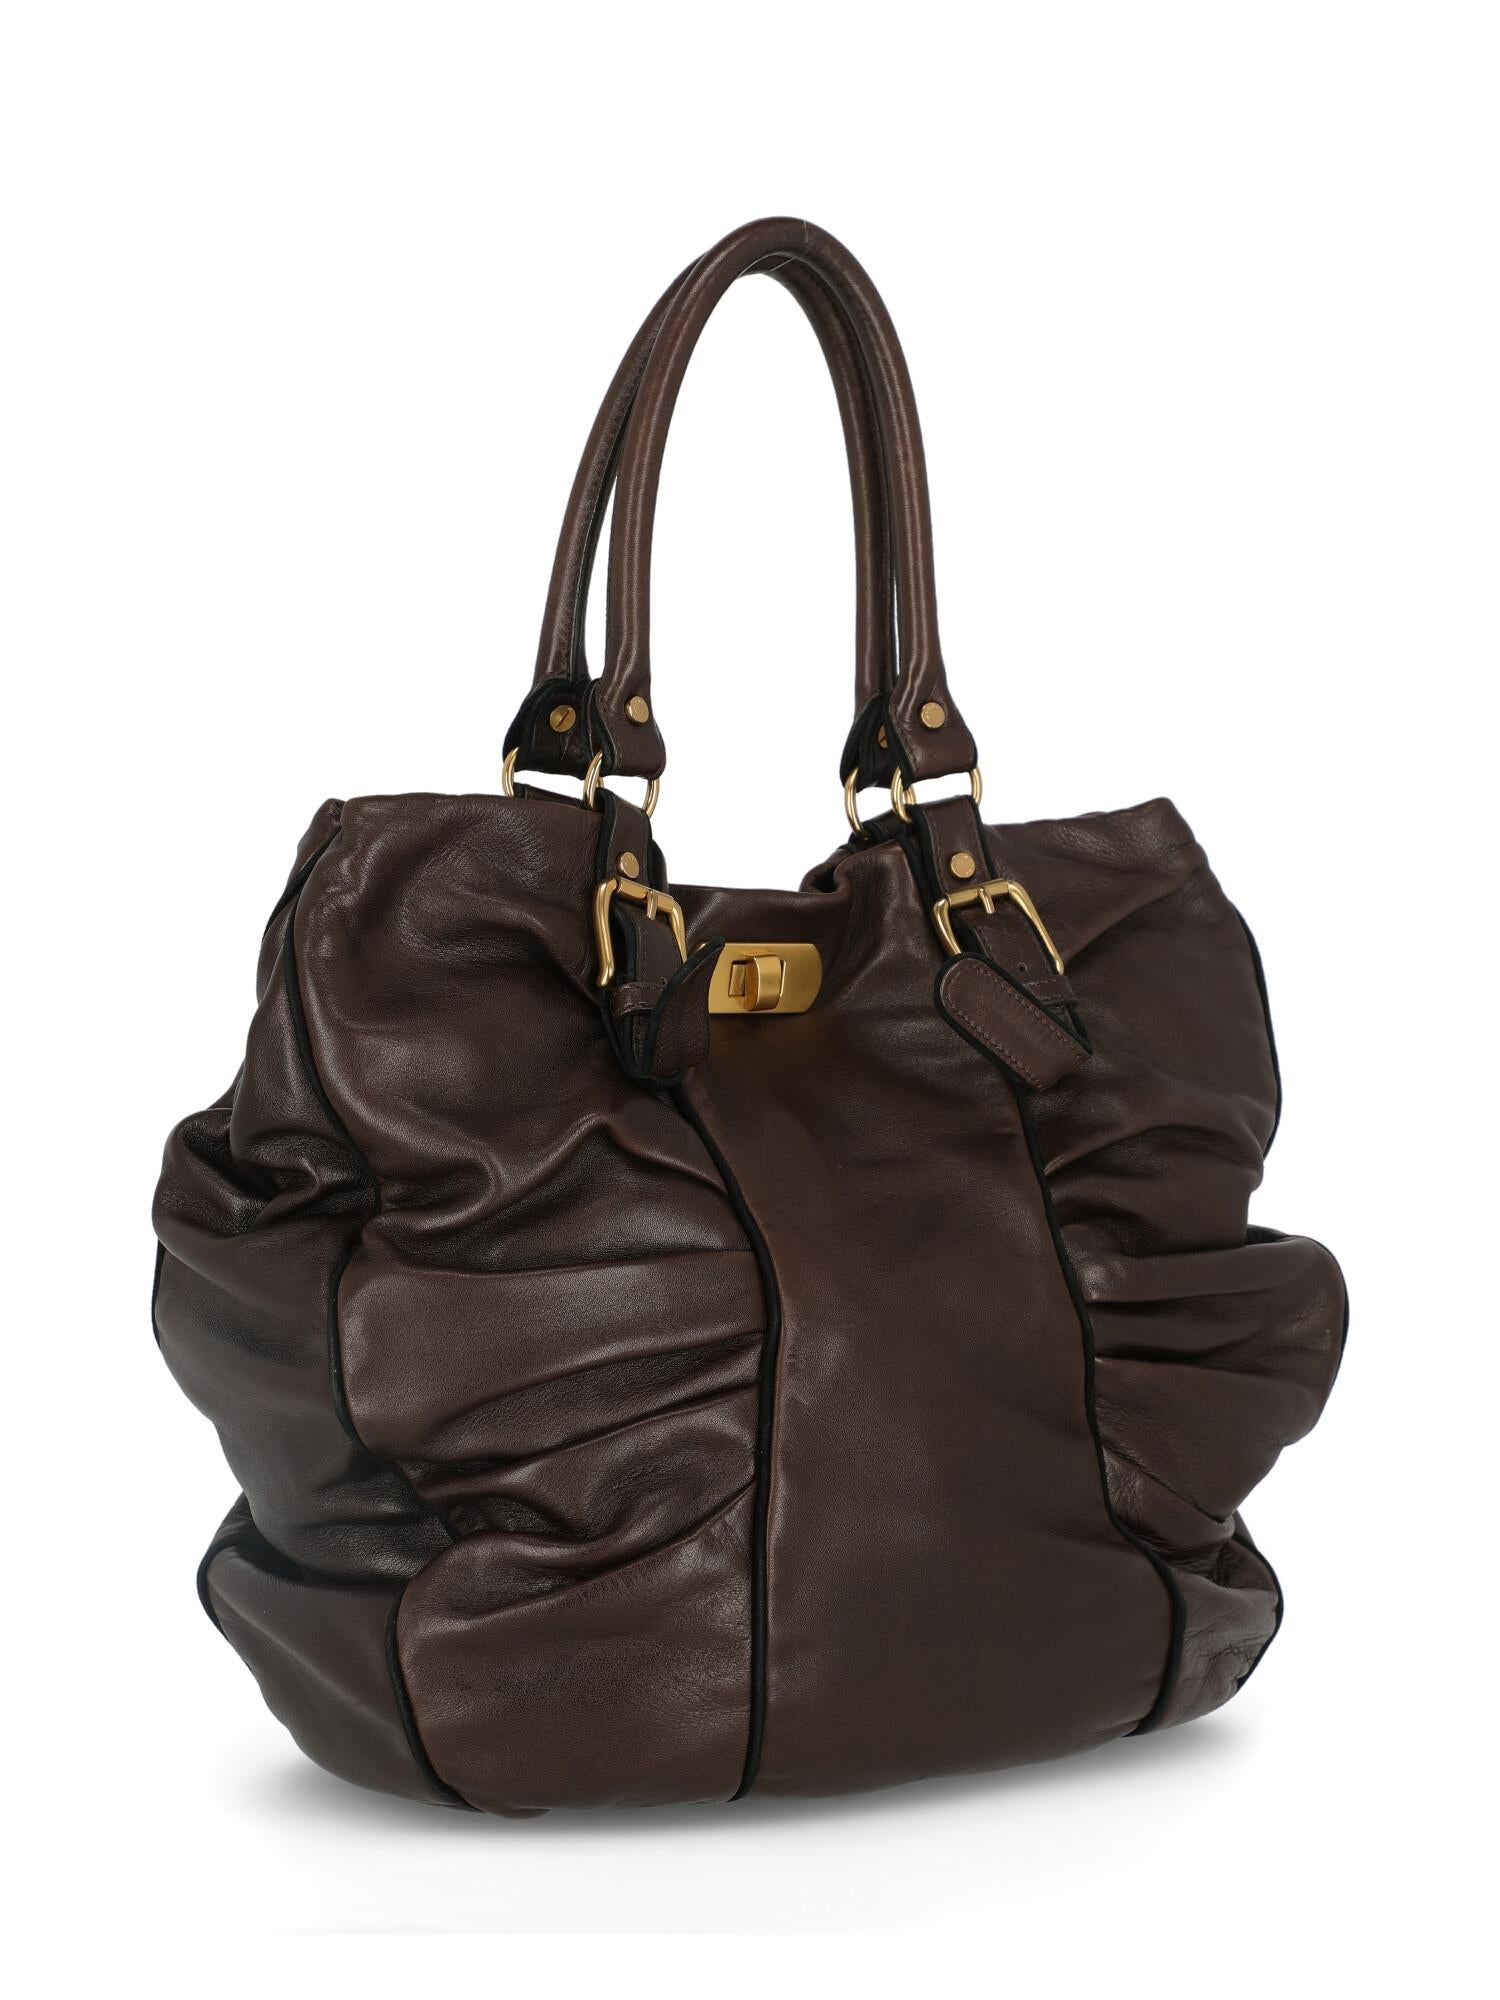 Black Marni Woman Handbag Brown Leather For Sale